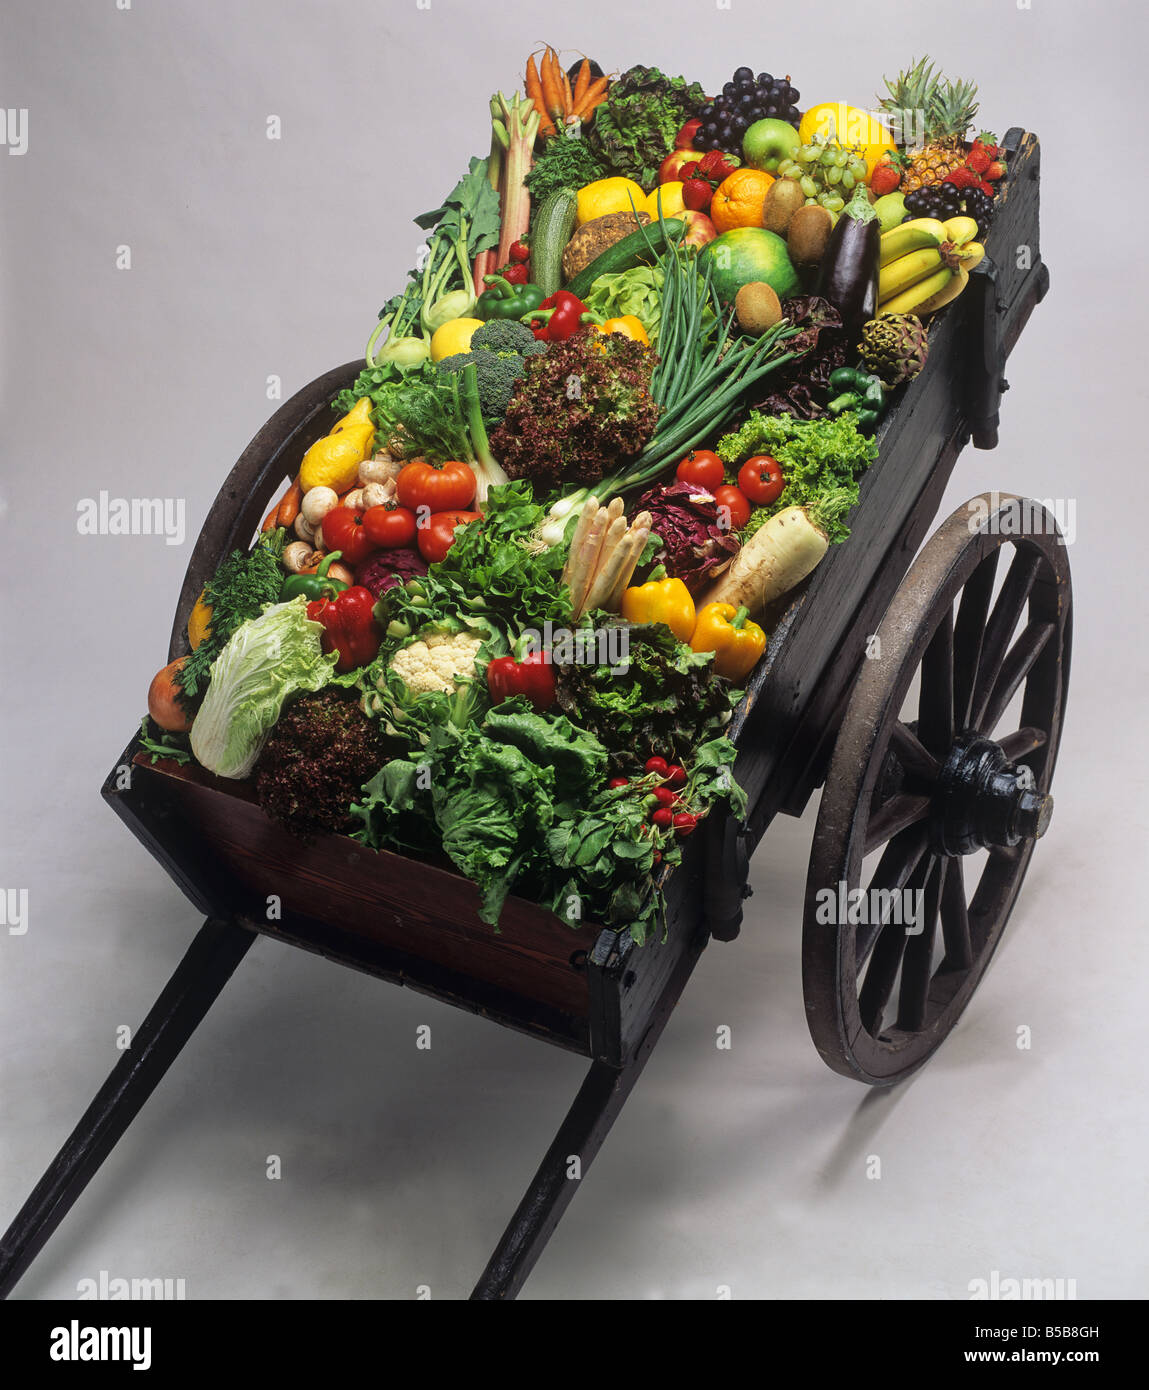 El carro cargado con frutas y verduras Fotografía de stock - Alamy